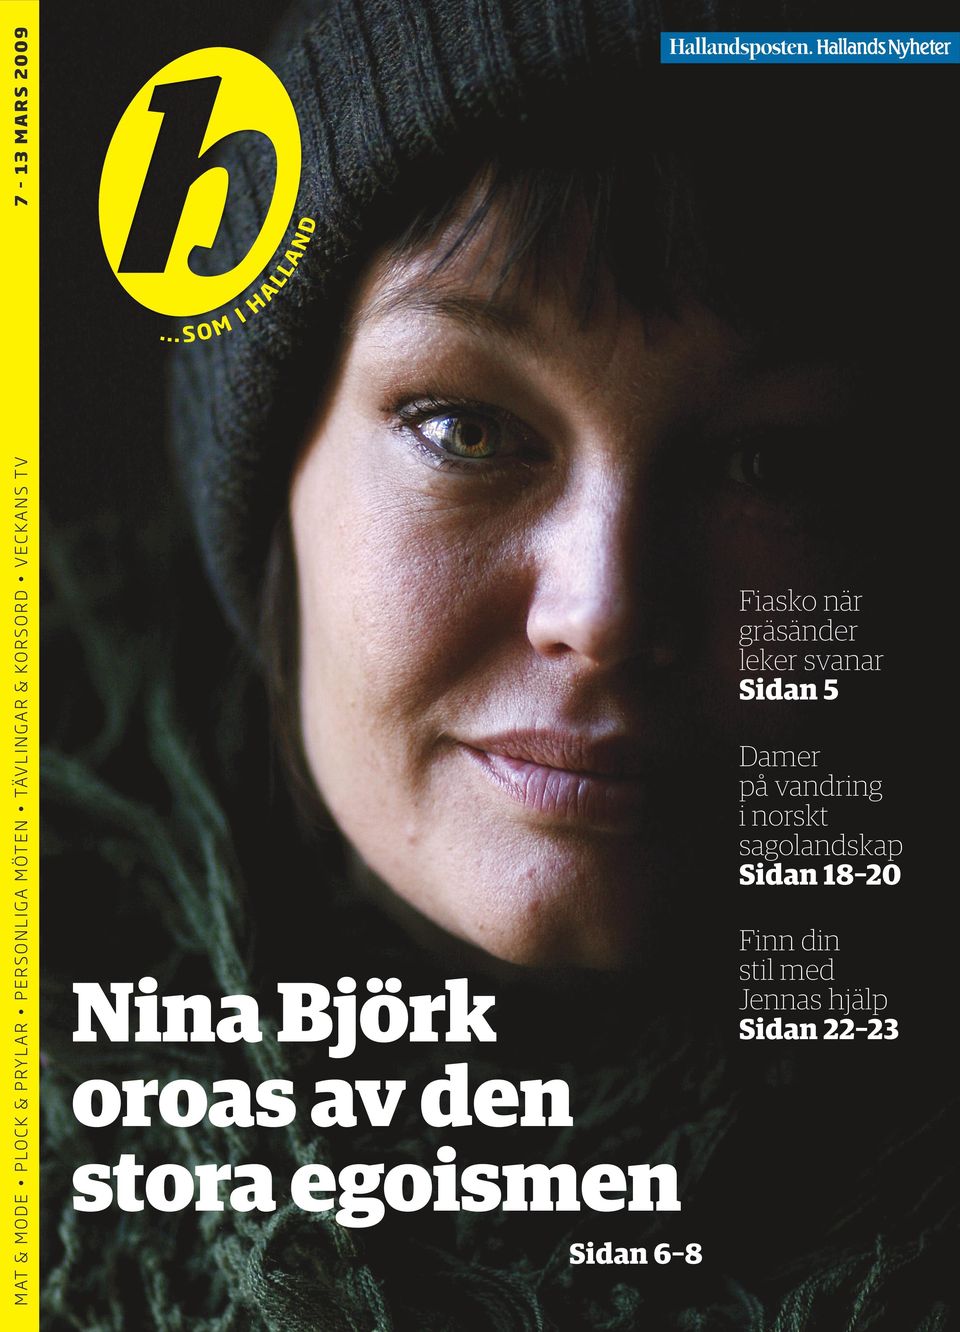 svanar Sidan 5 Damer på vandring i norskt sagolandskap Sidan 18 20 Nina Björk